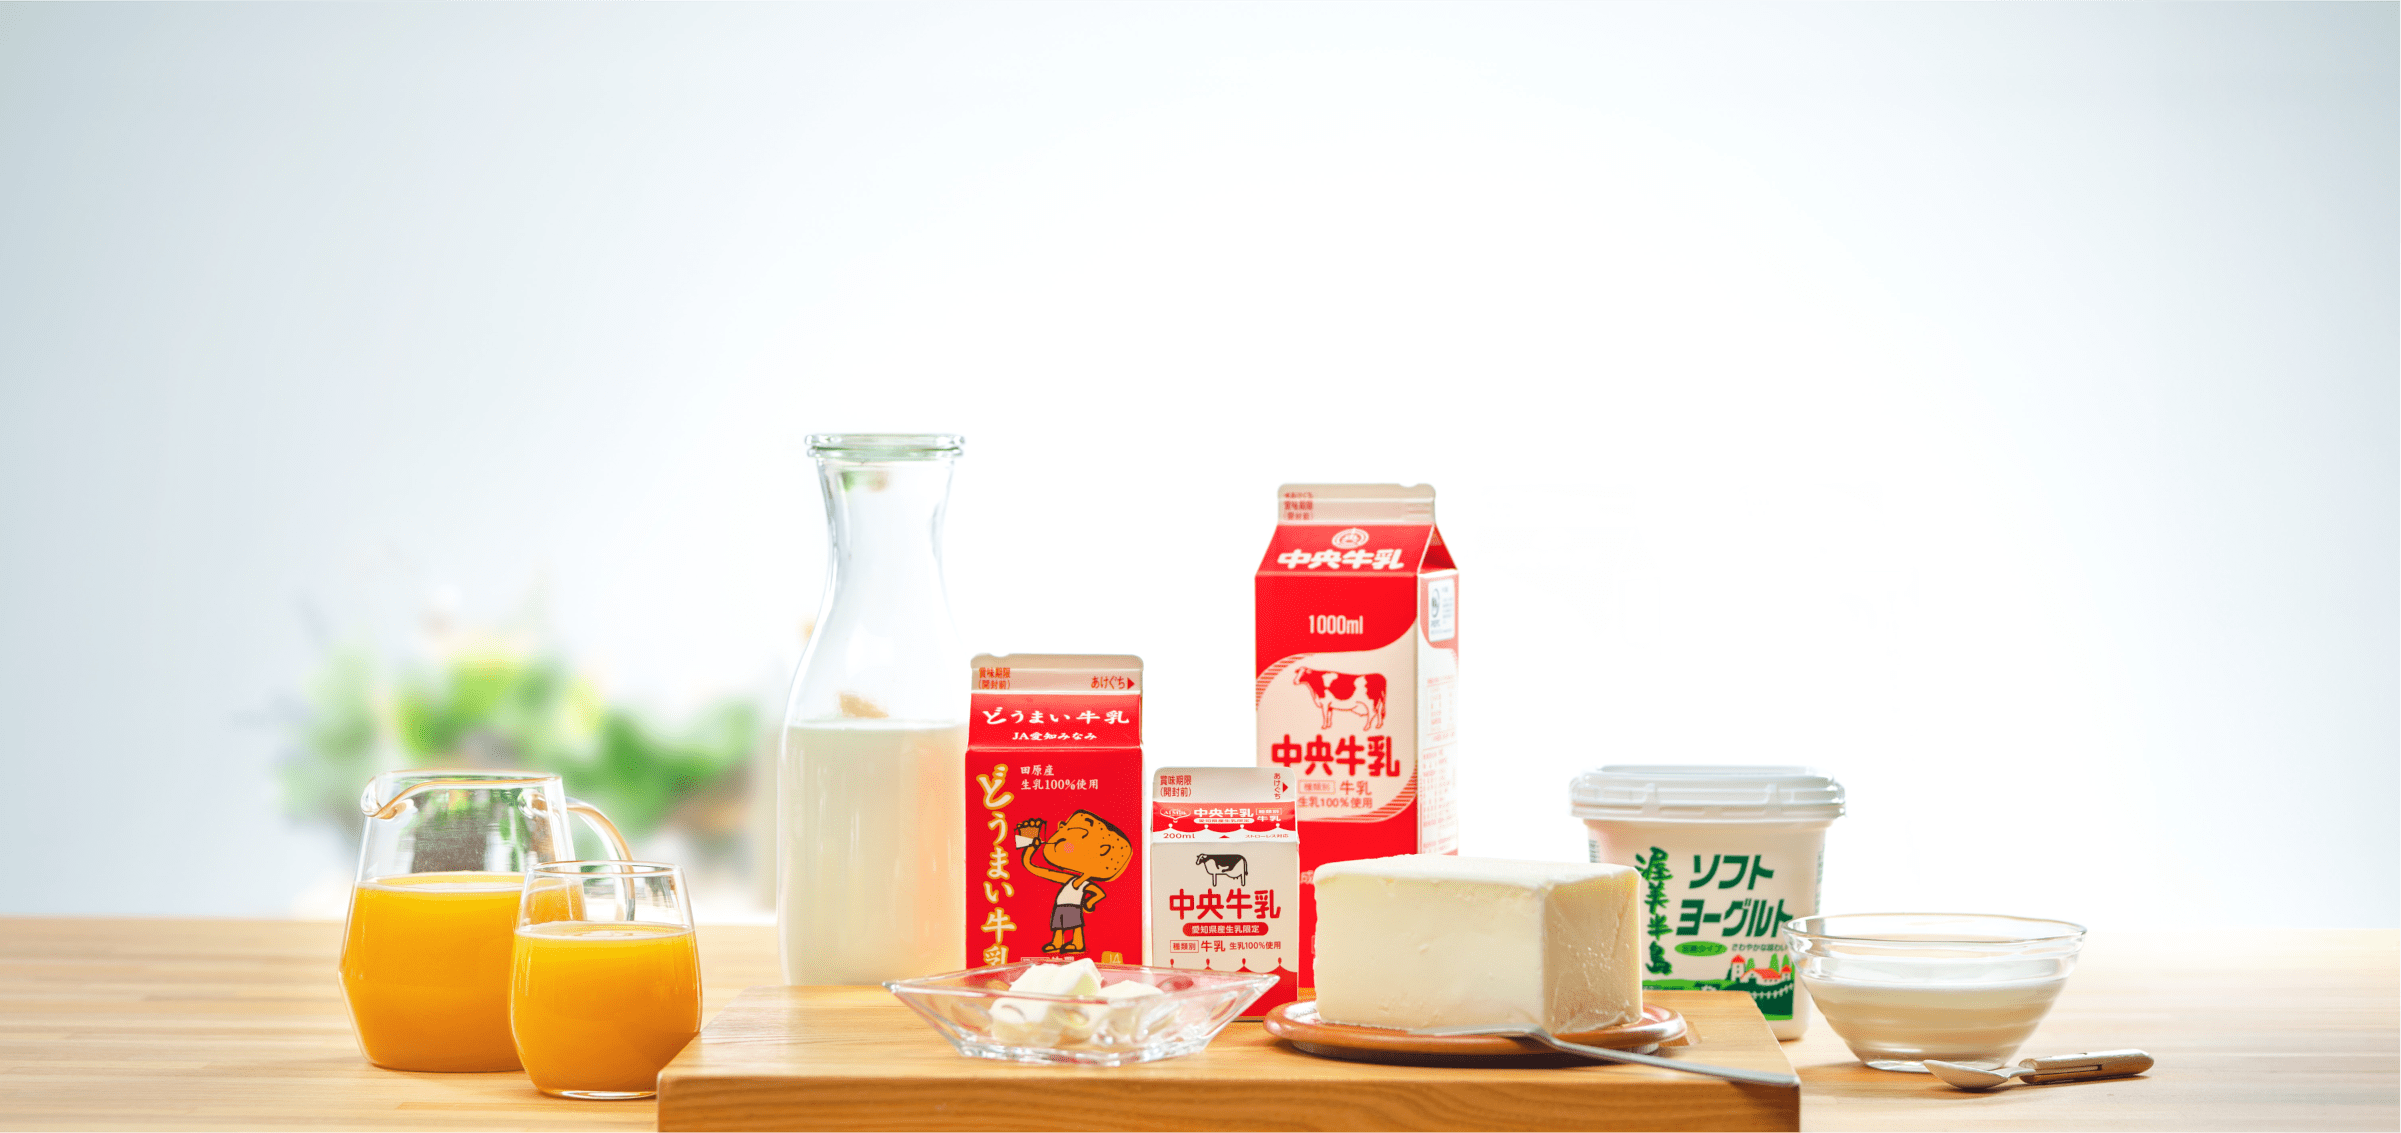 中央製乳の商品集合イメージ